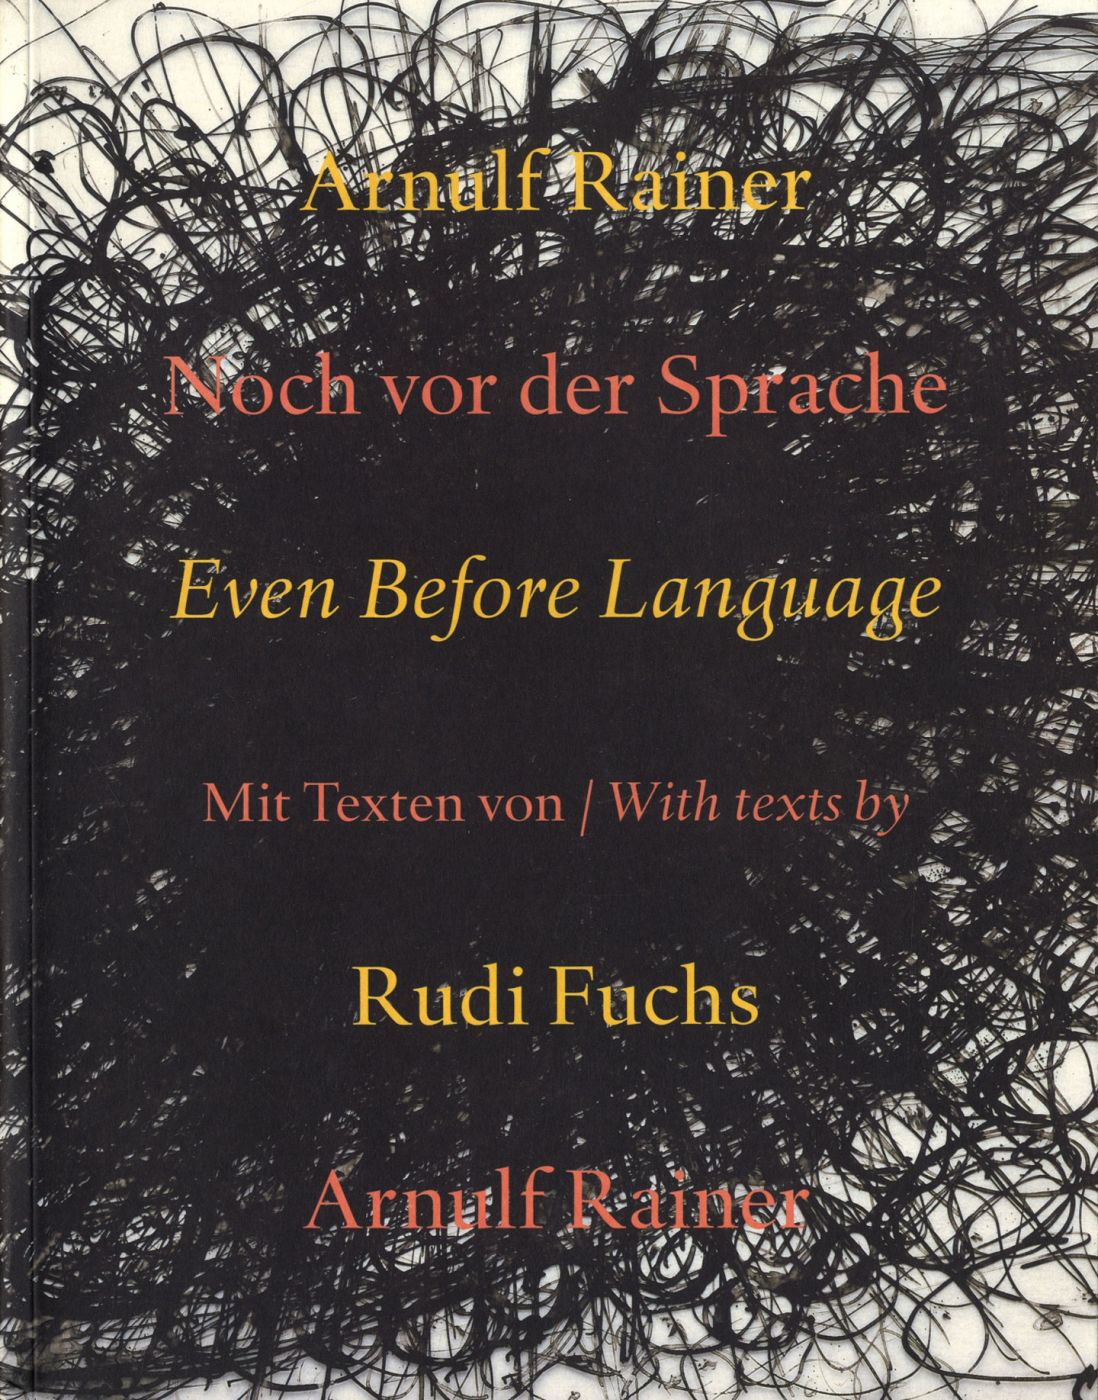 Arnulf Rainer: Even Before Language (Noch vor der Sprache)